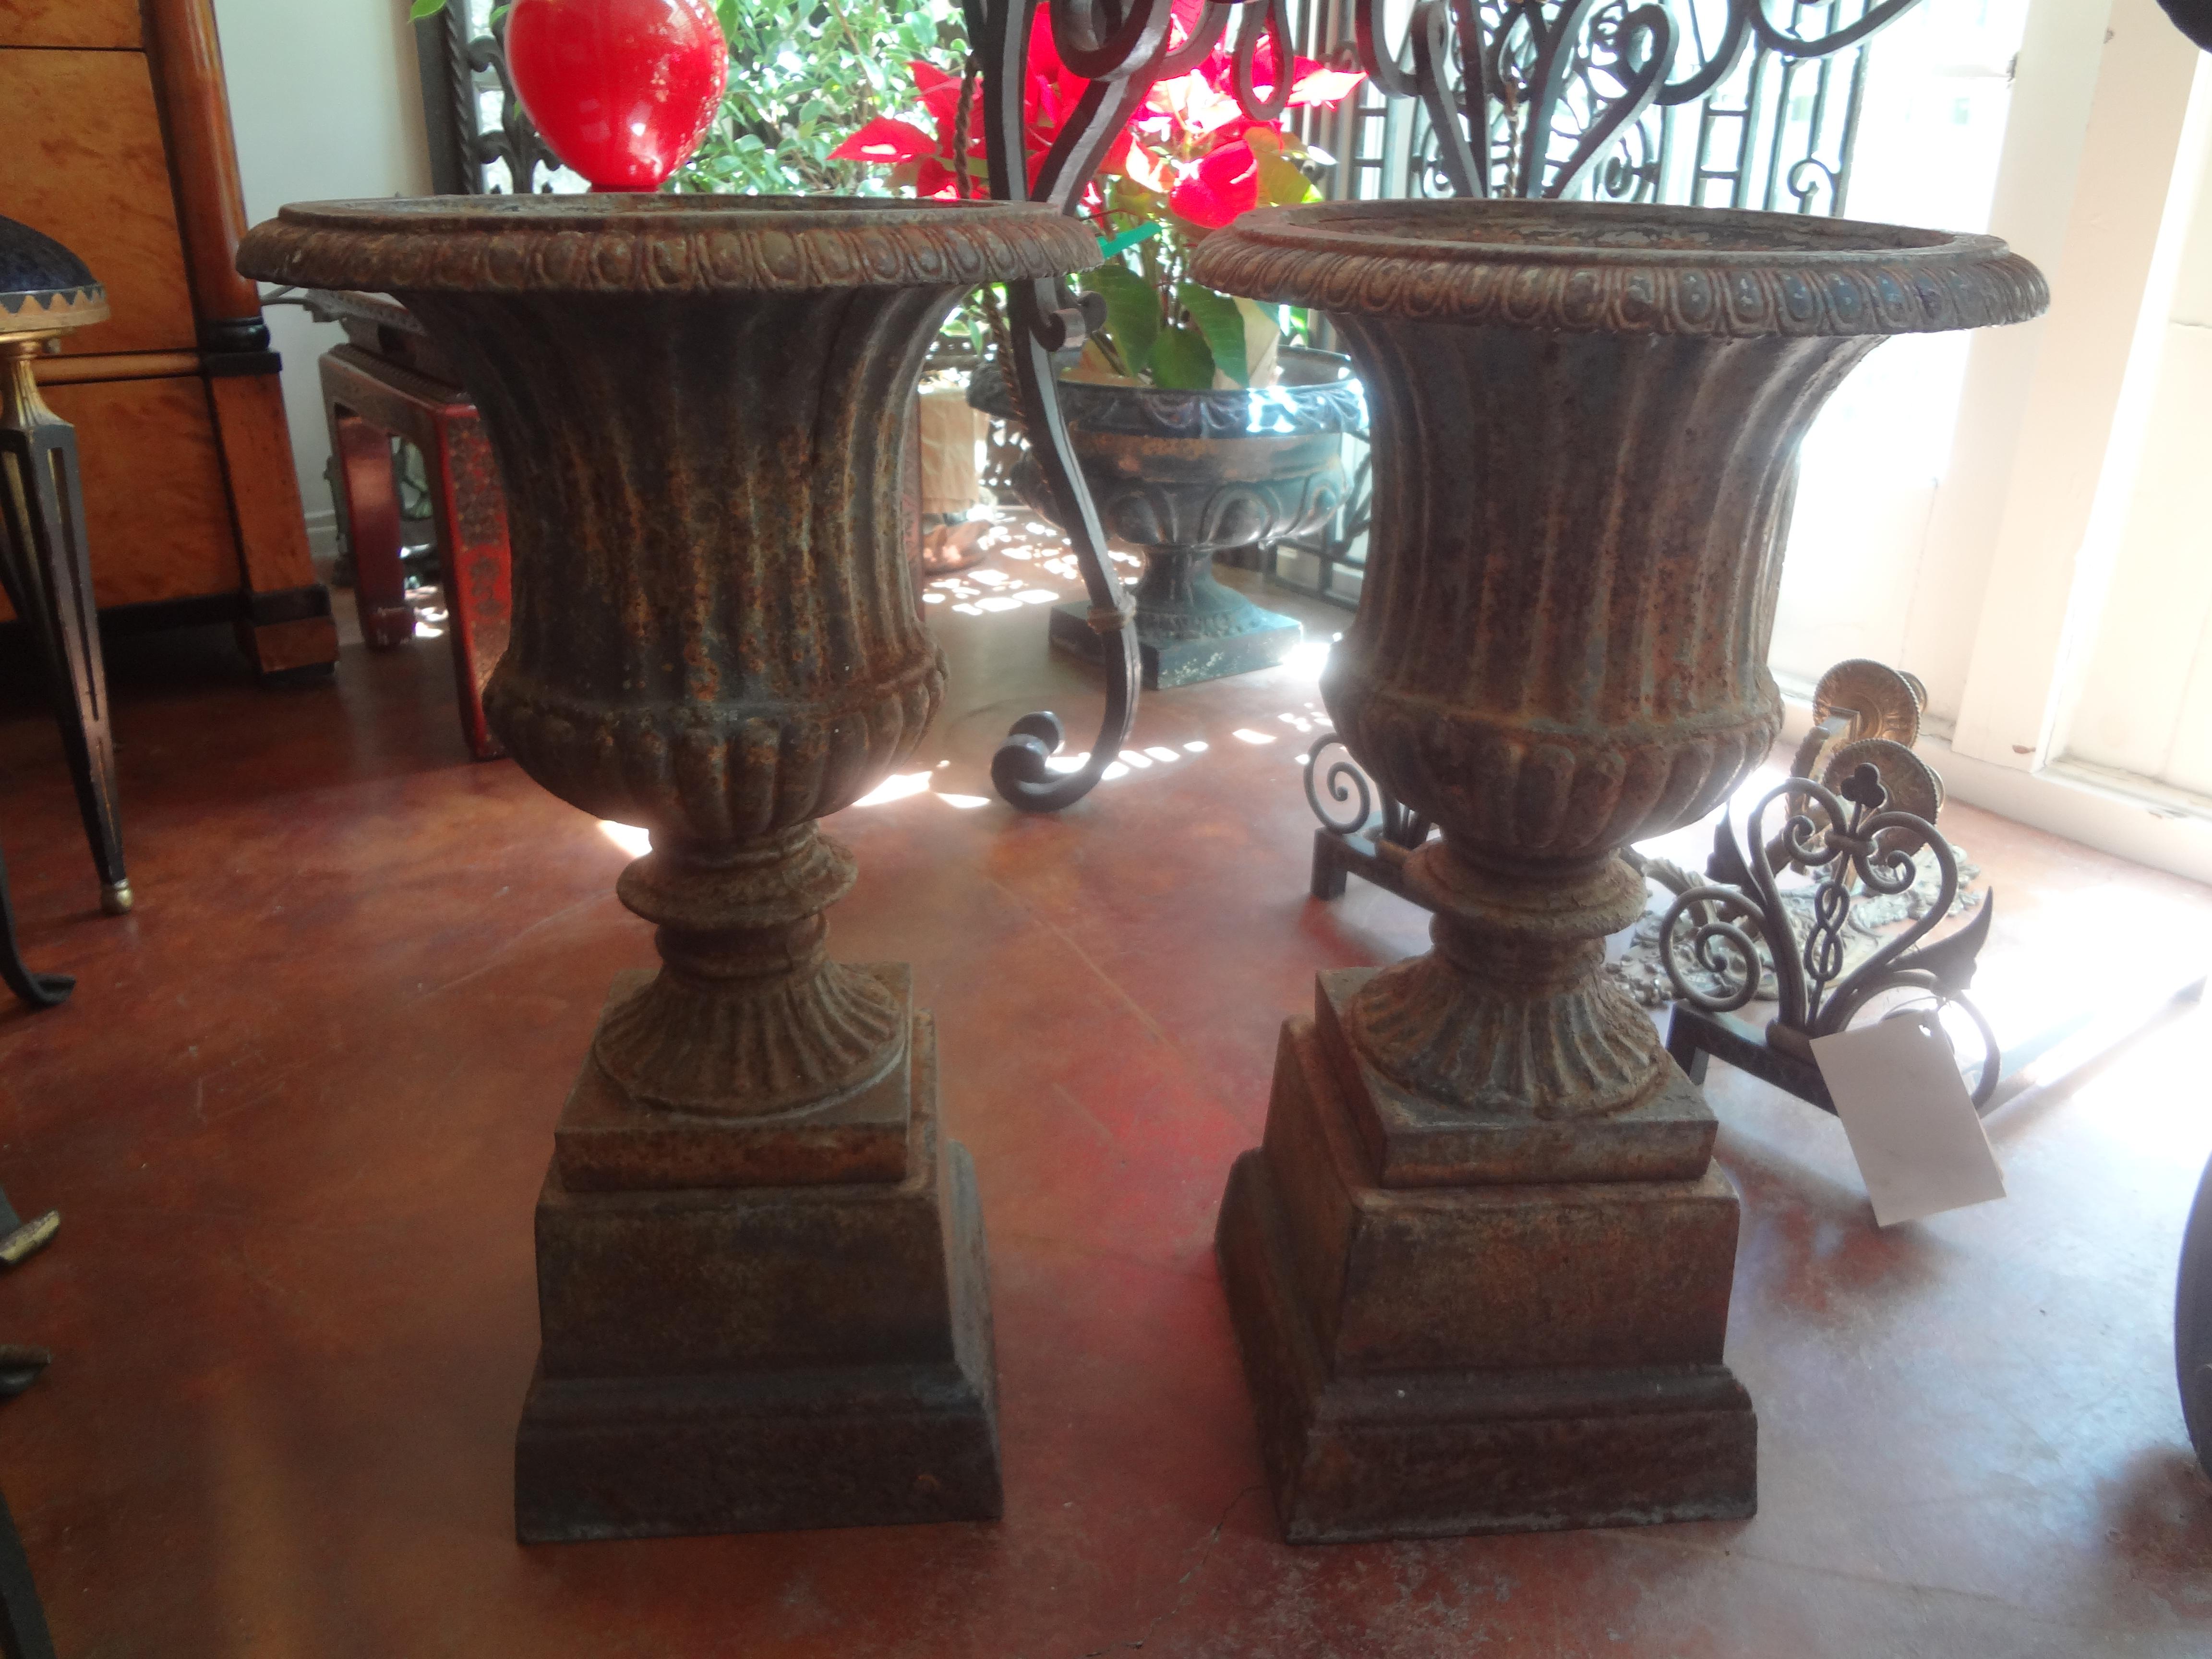 Paire d'urnes de jardin en fer de style néoclassique français du 19e siècle sur socle. Ces magnifiques urnes de jardin, jardinières ou jardinières campanaires en fonte française peuvent être utilisées à l'intérieur ou à l'extérieur.
Excellent